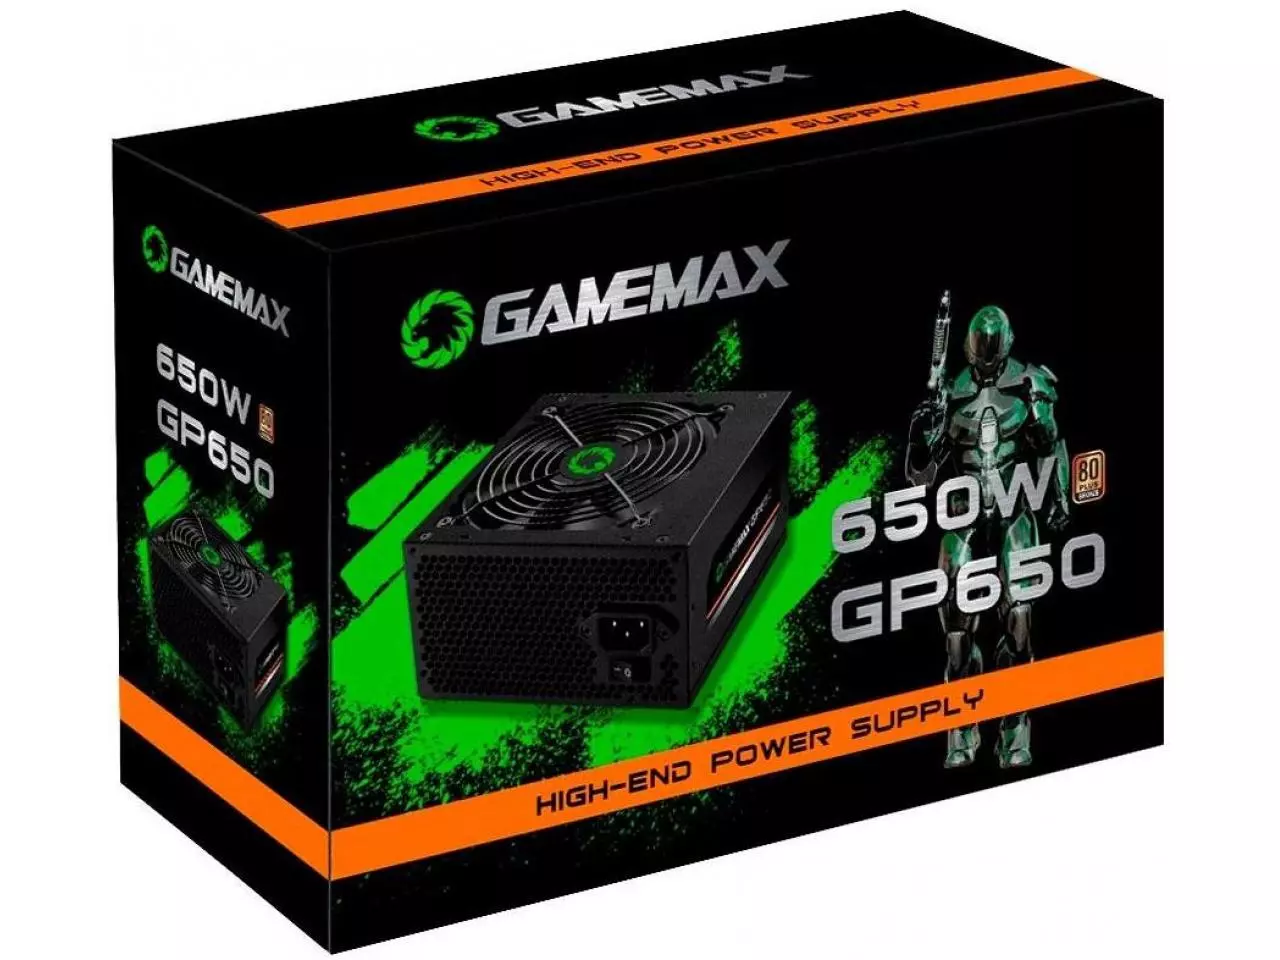 Fonte Gamemax 600W Semi-Modular ATX12V v2.3 80 PLUS Bronze — HARDSTORE  Informática - Loja de Informática e PC Gamer em Porto Alegre e Caxias do Sul